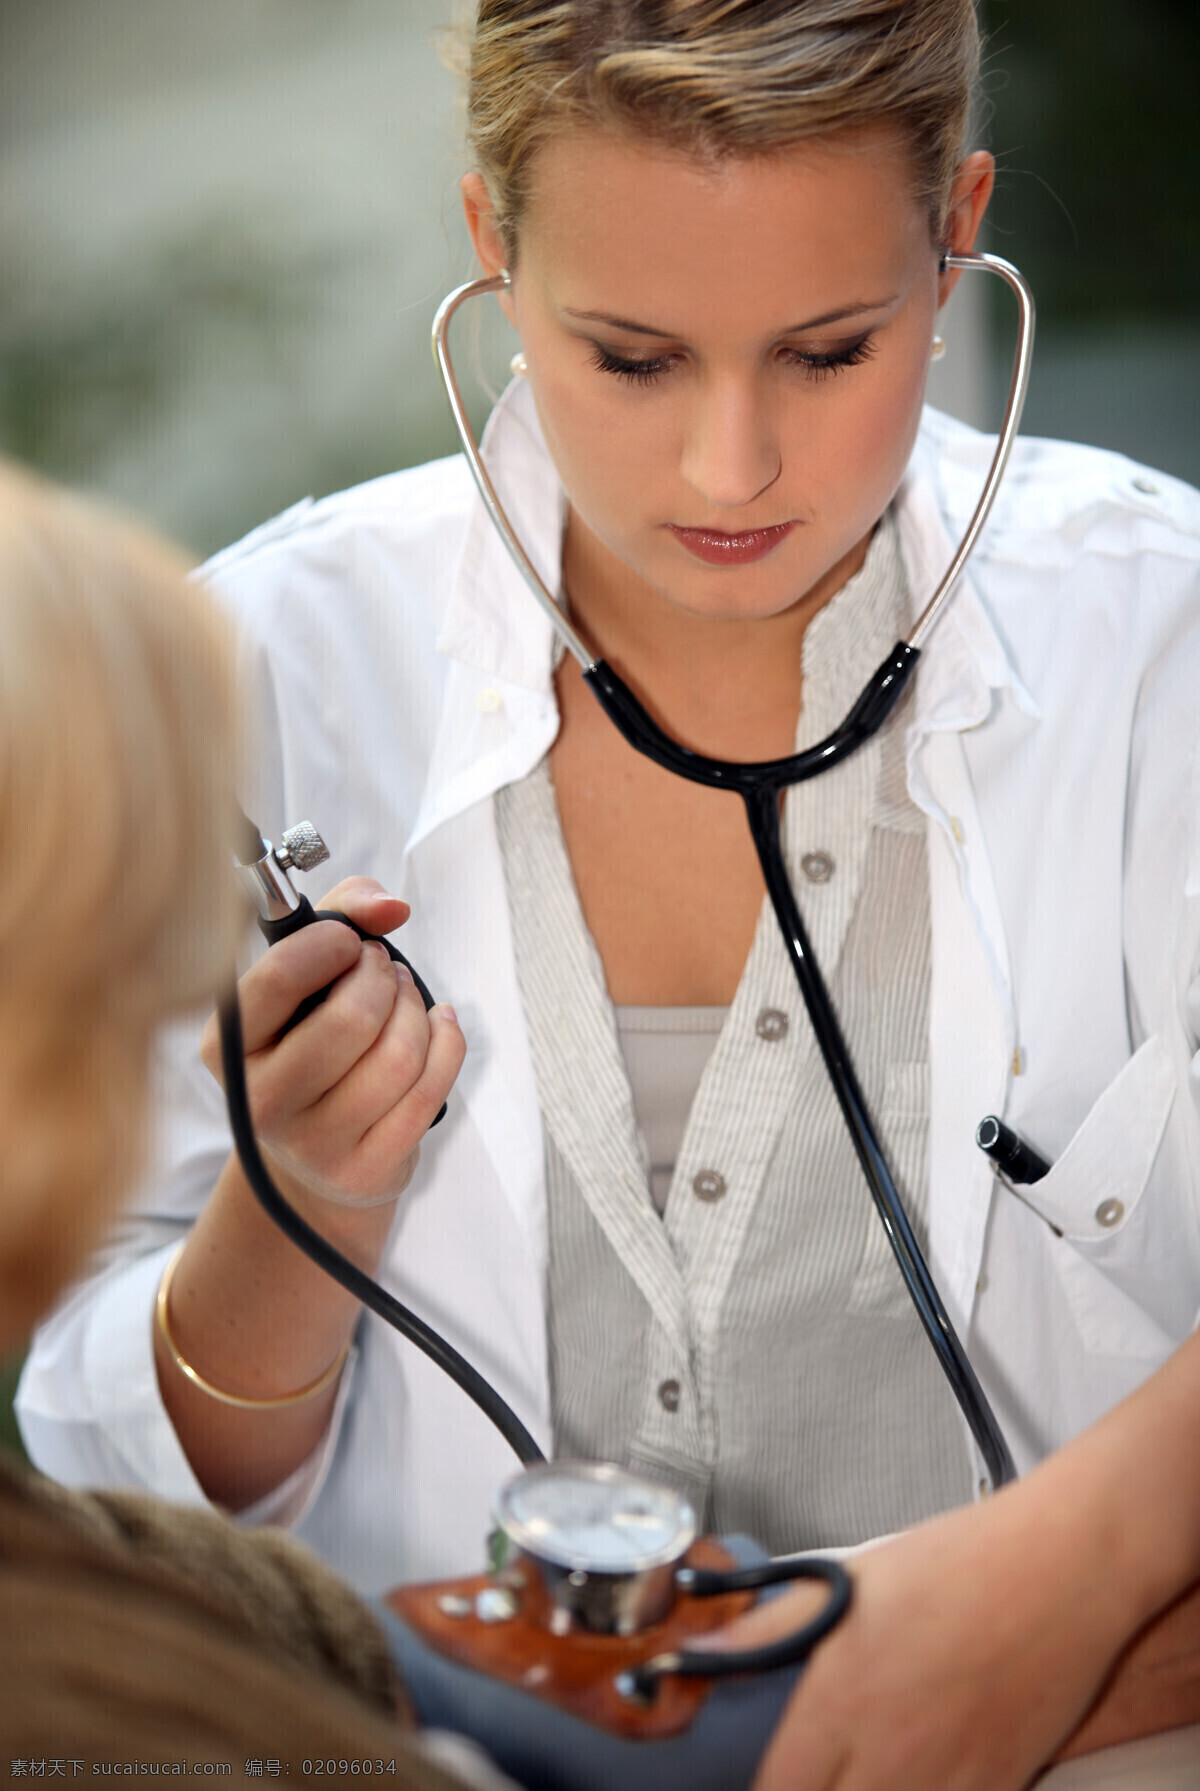 美女 医生 病人 量 血压 外国美女 女医生 大夫 听诊器 量血压 血压计 商务人士 人物图片